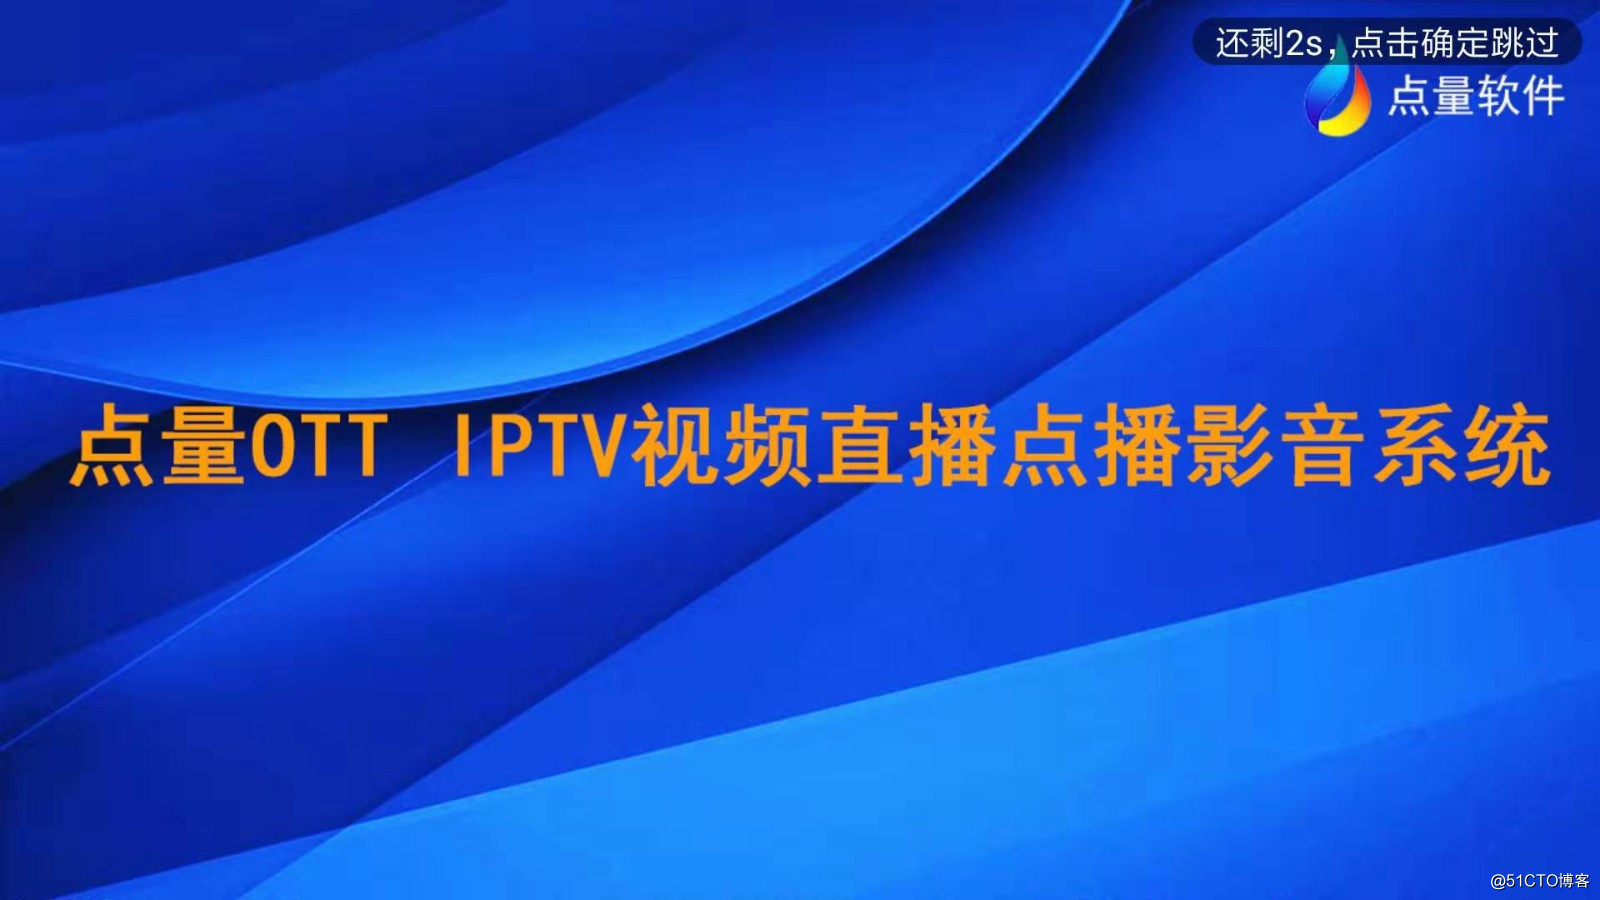 IPTV電視盒系統廣告有哪些展現形式